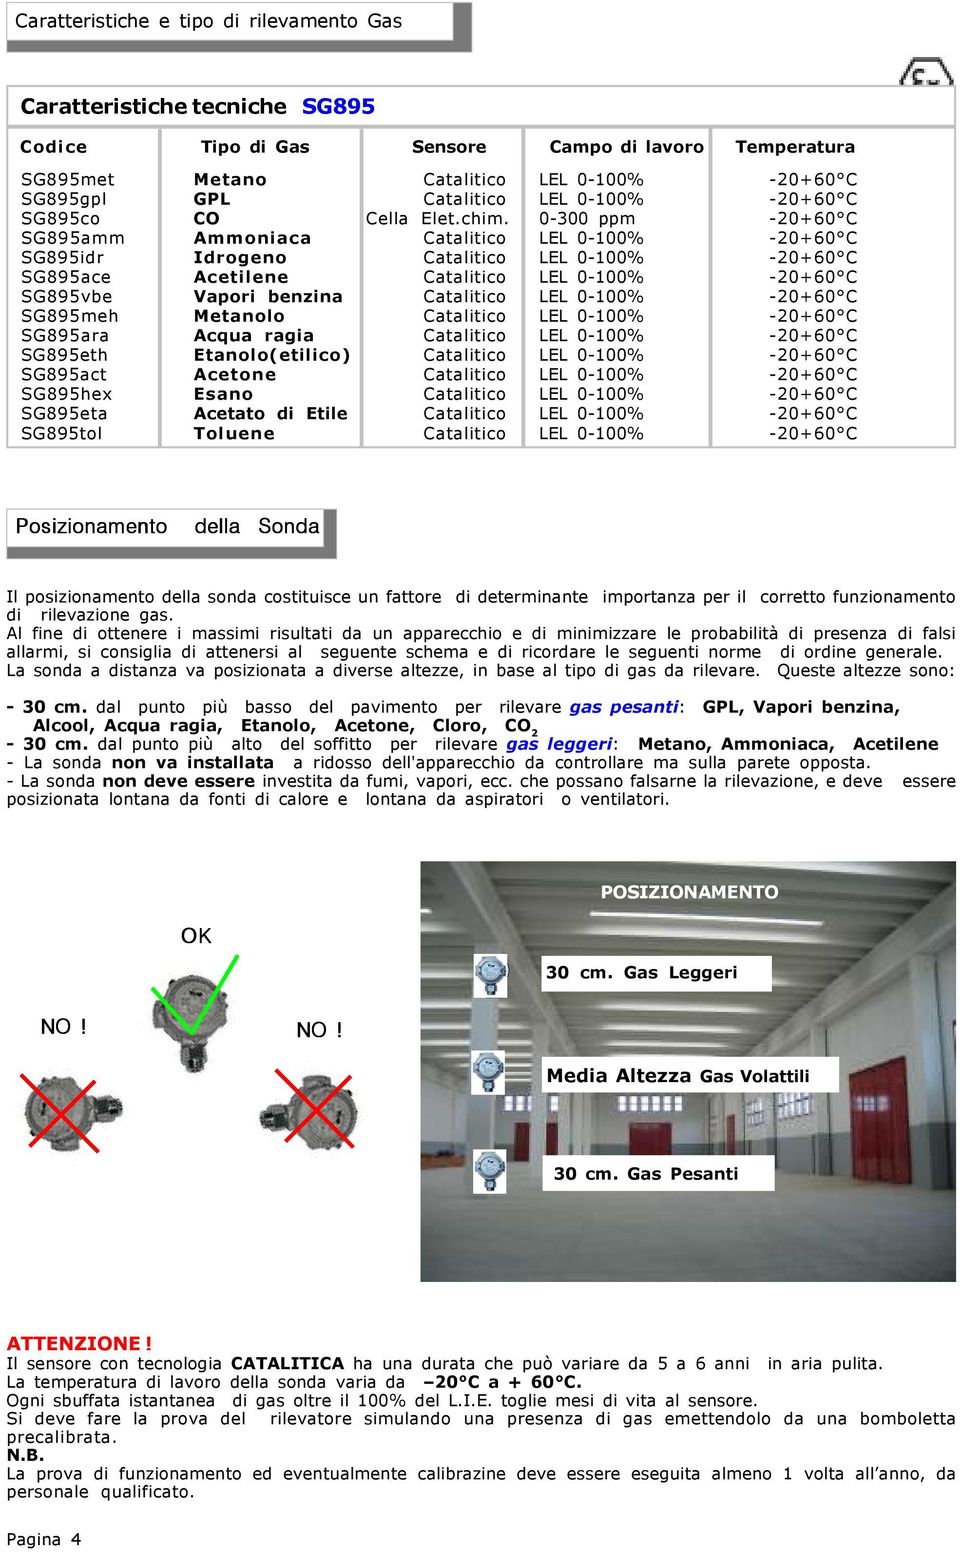 0-00 ppm -0+60 C SG895amm Ammoniaca Catalitico LEL 0-00% -0+60 C SG895idr Idrogeno Catalitico LEL 0-00% -0+60 C SG895ace Acetilene Catalitico LEL 0-00% -0+60 C SG895vbe Vapori benzina Catalitico LEL